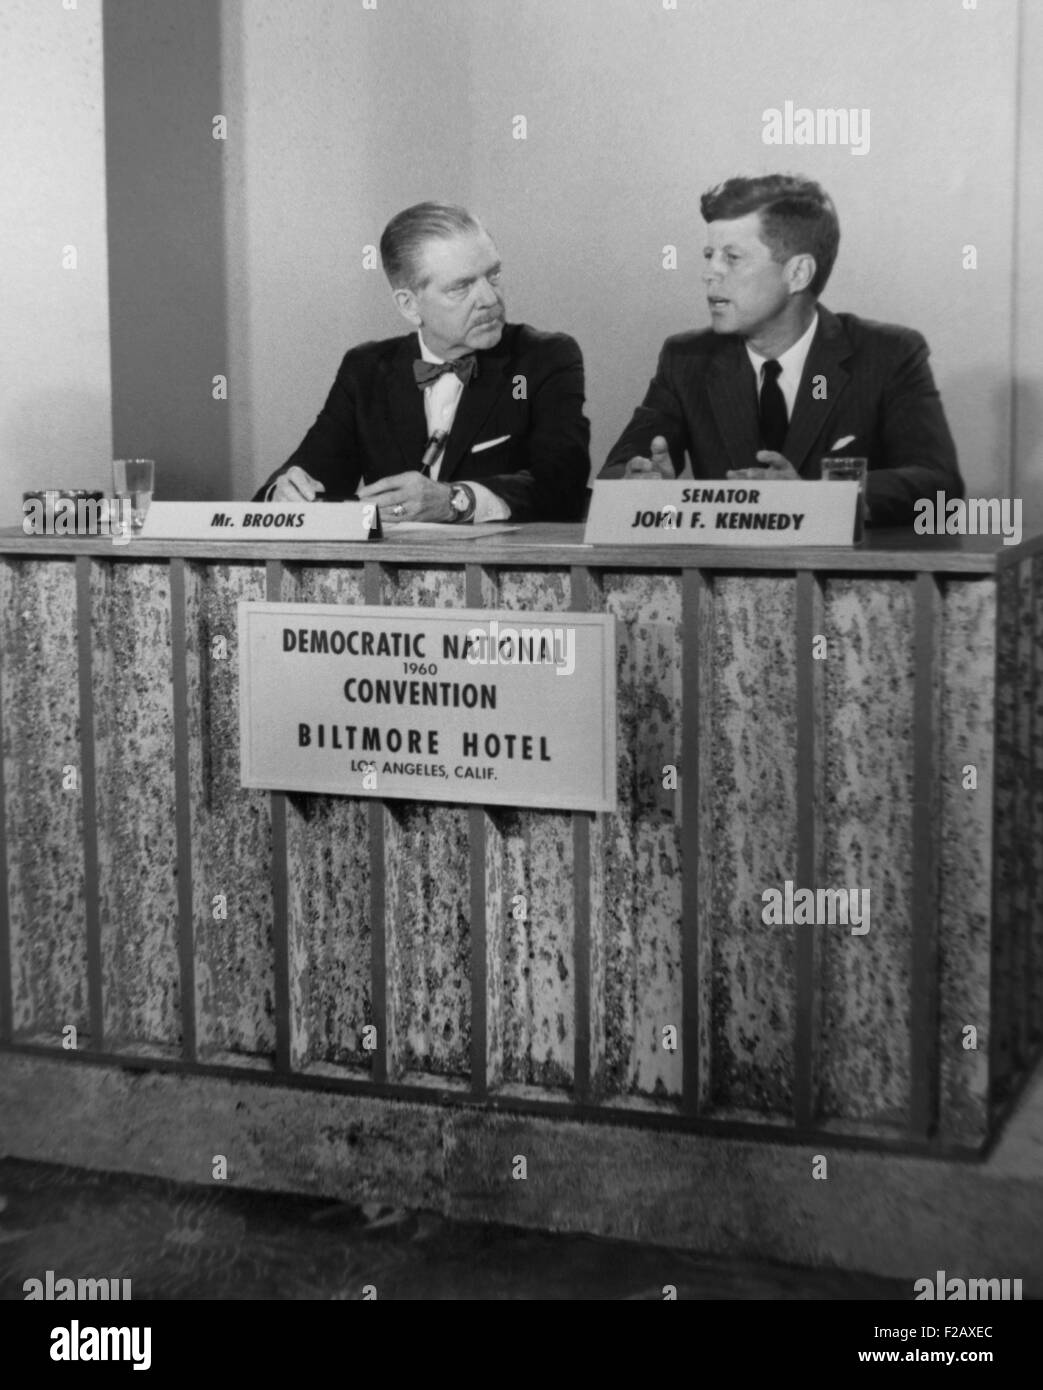 Le sénateur John F. Kennedy à la télévision montrent la presse. Il a été interviewé par Ned Brooks au cours de la Convention nationale du Parti démocrate à Los Angeles, 11-17 juillet 1960. (BSLOC 2015 2 220) Banque D'Images